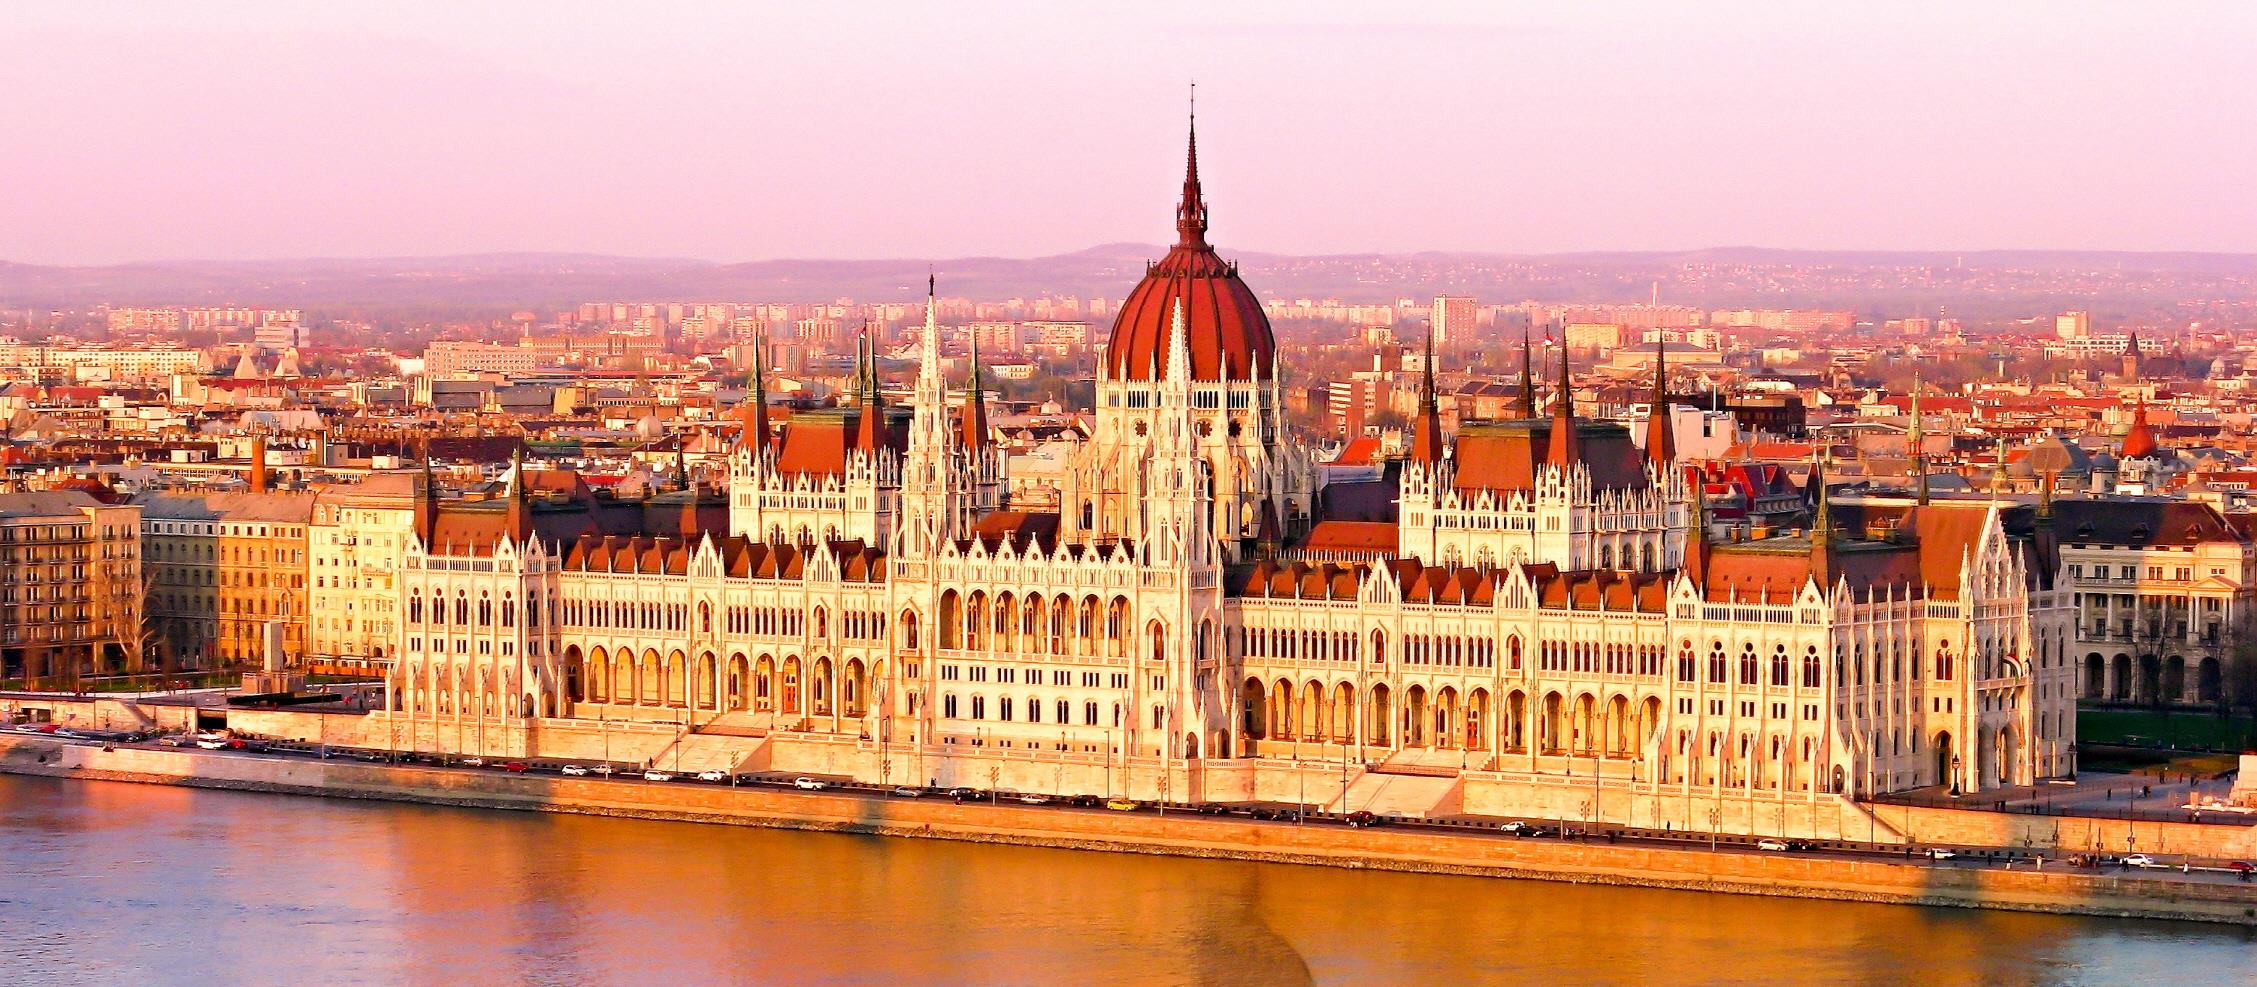 헝가리 국회의사당  Parliament